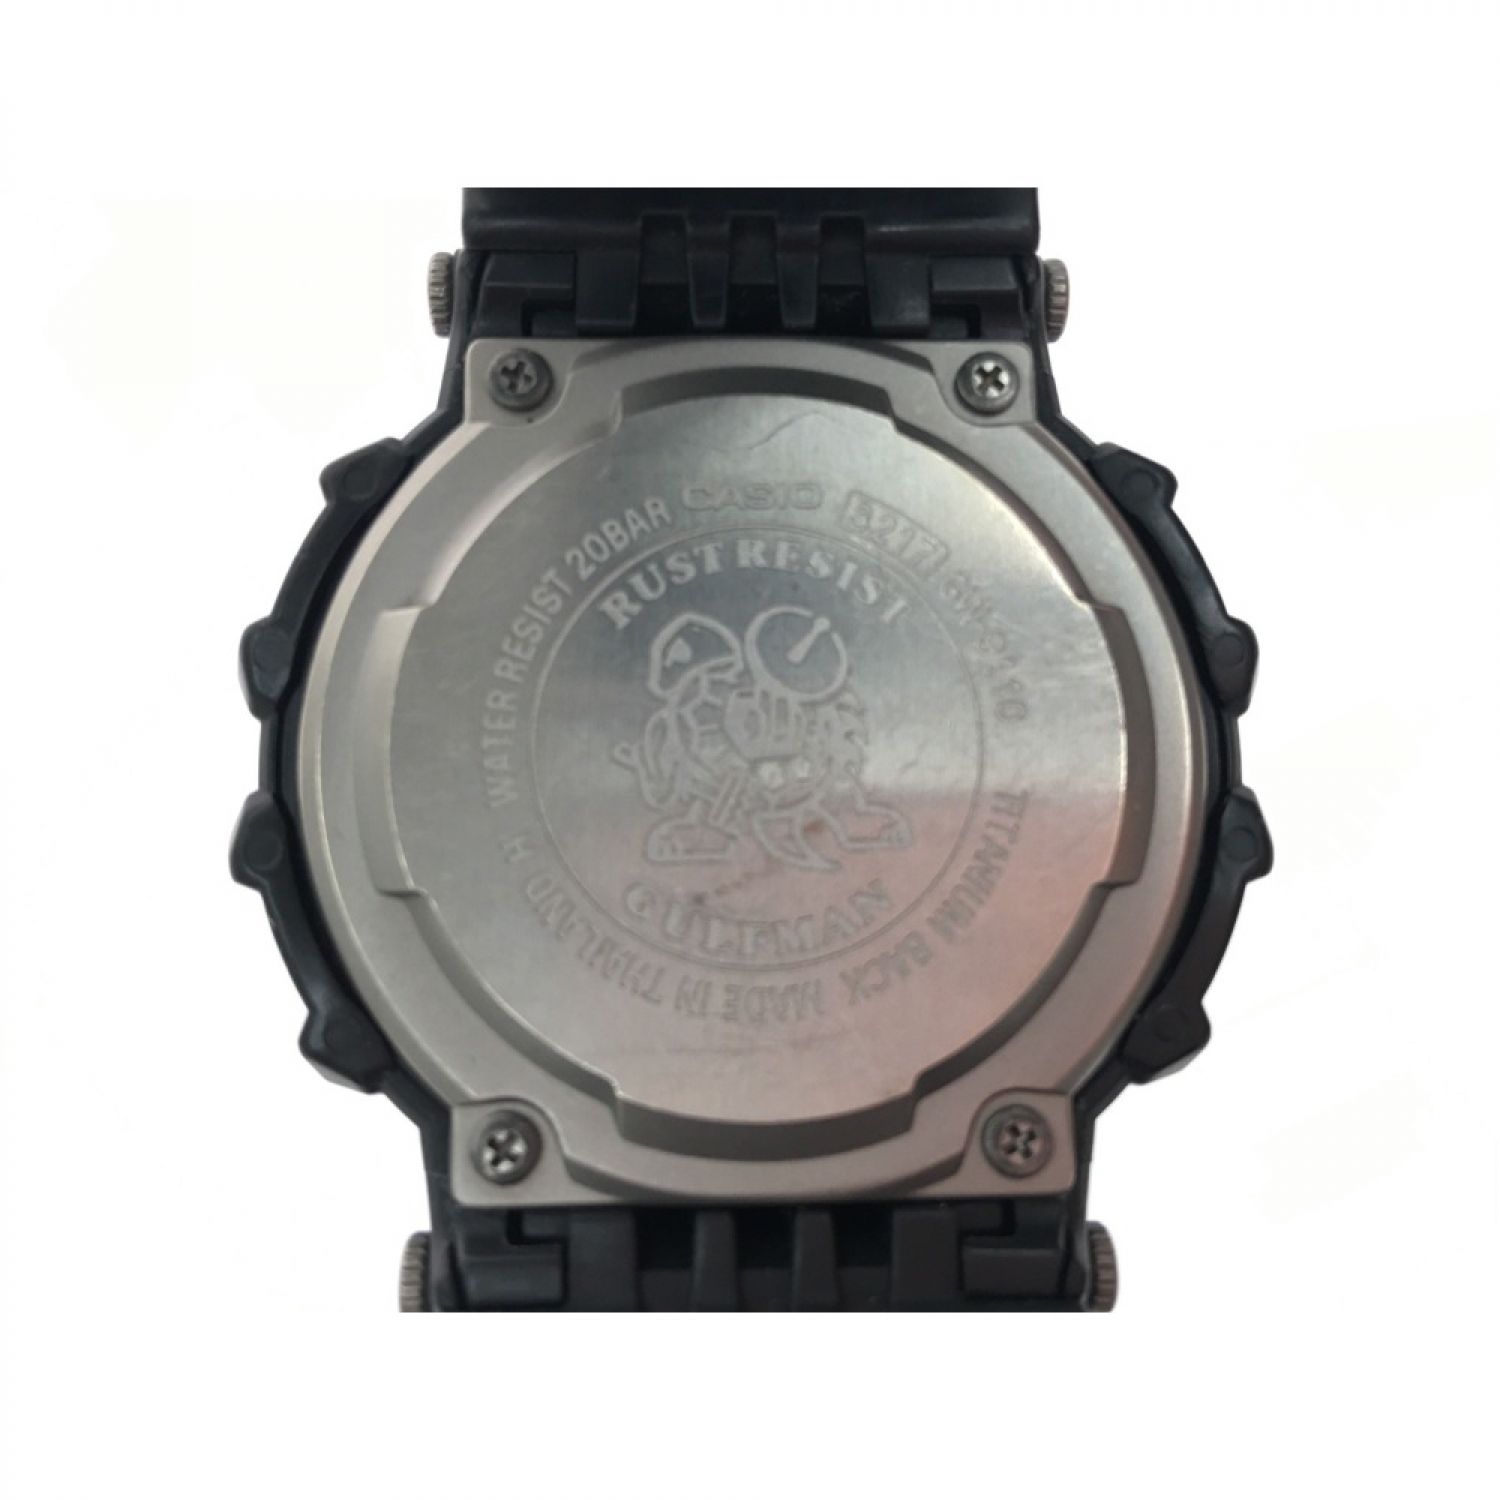 時計▼▼CASIO カシオ メンズ腕時計 G-SHOCK デジタルウォッチ タフソーラー GW-9110